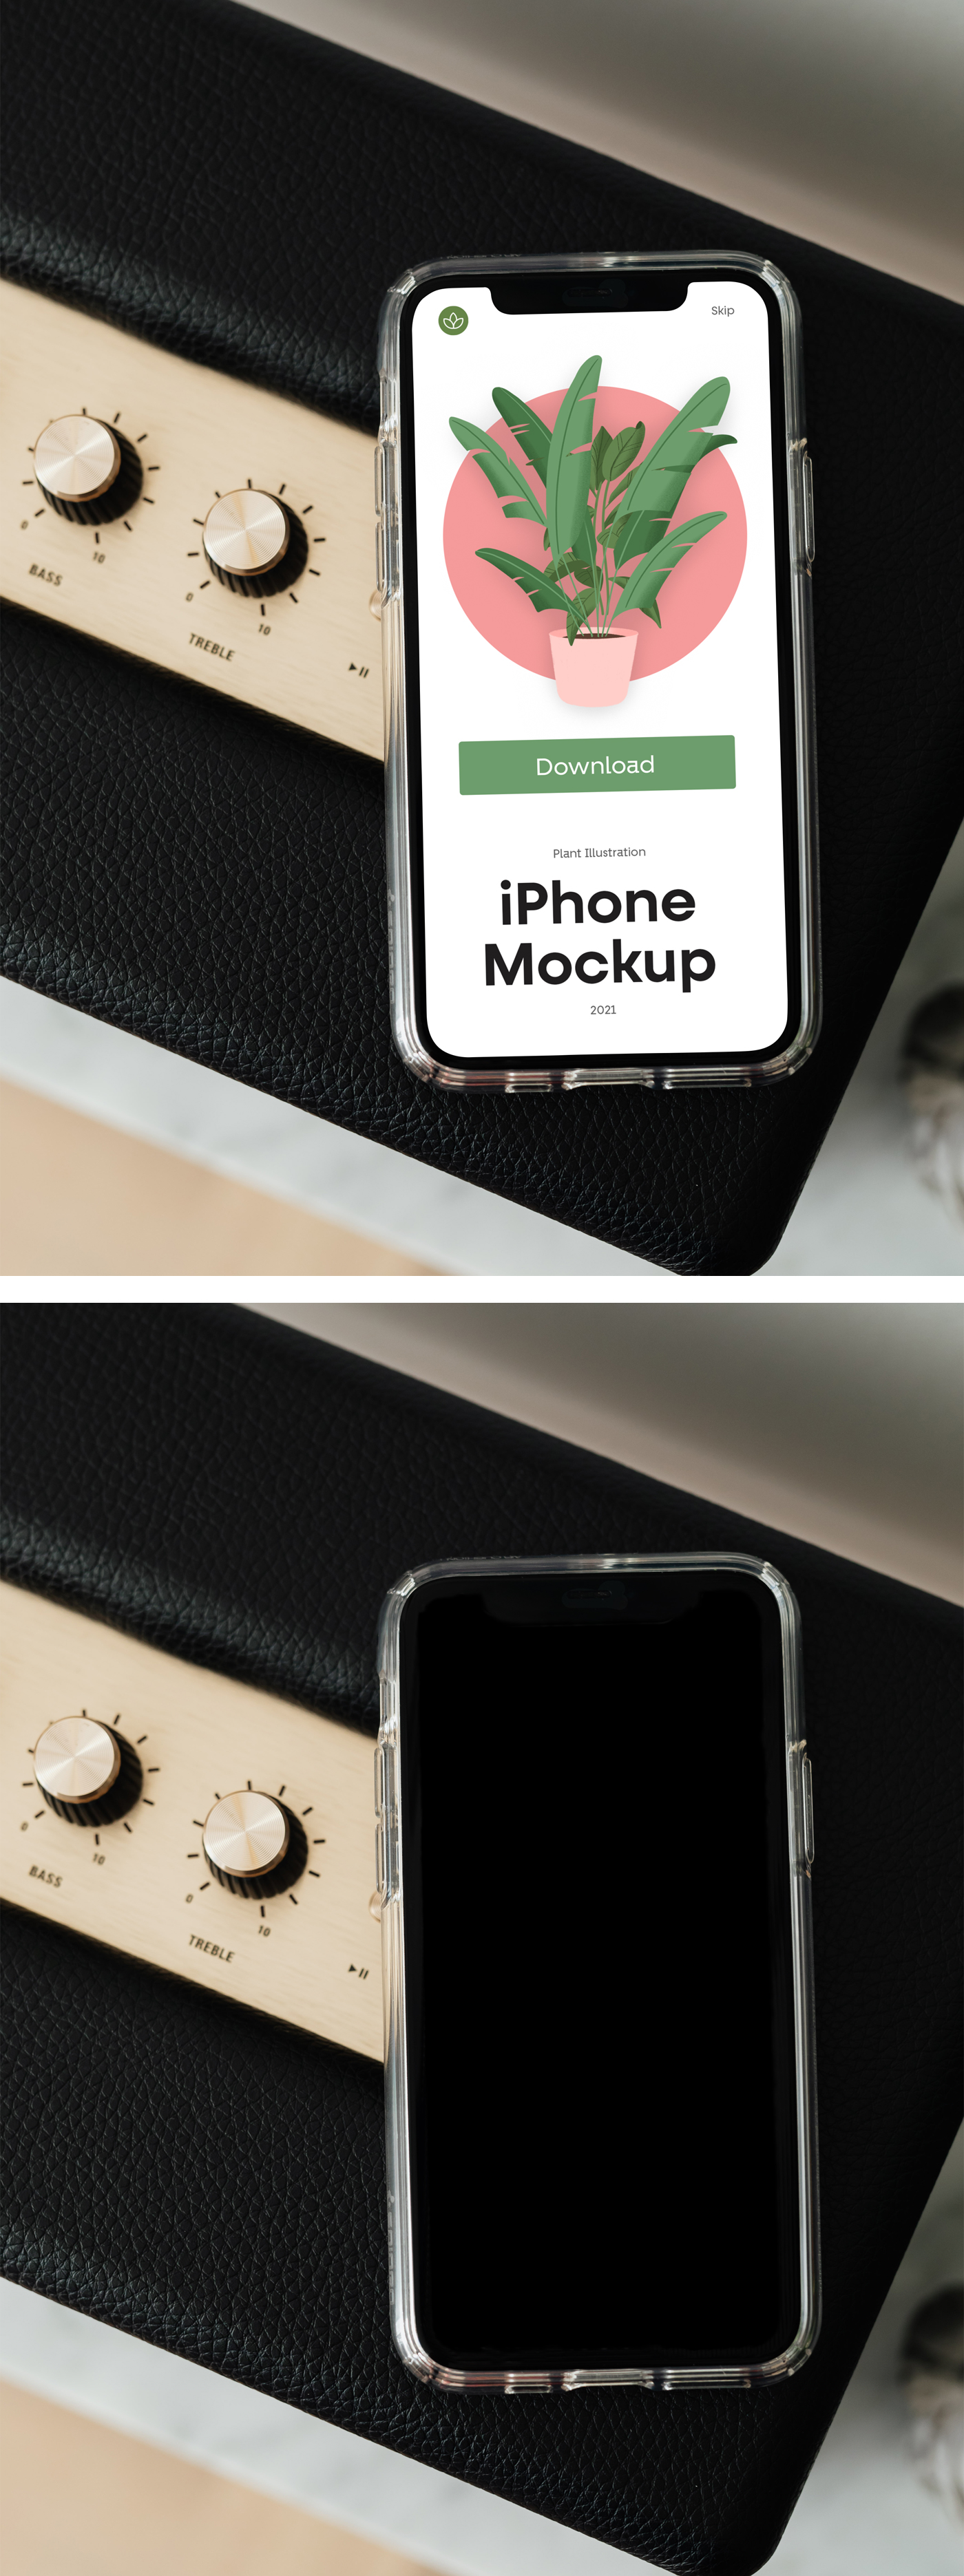 426 可商用手机屏幕UI设计展示PSD样机素材 iPhone XS PSD Mockup D.zip